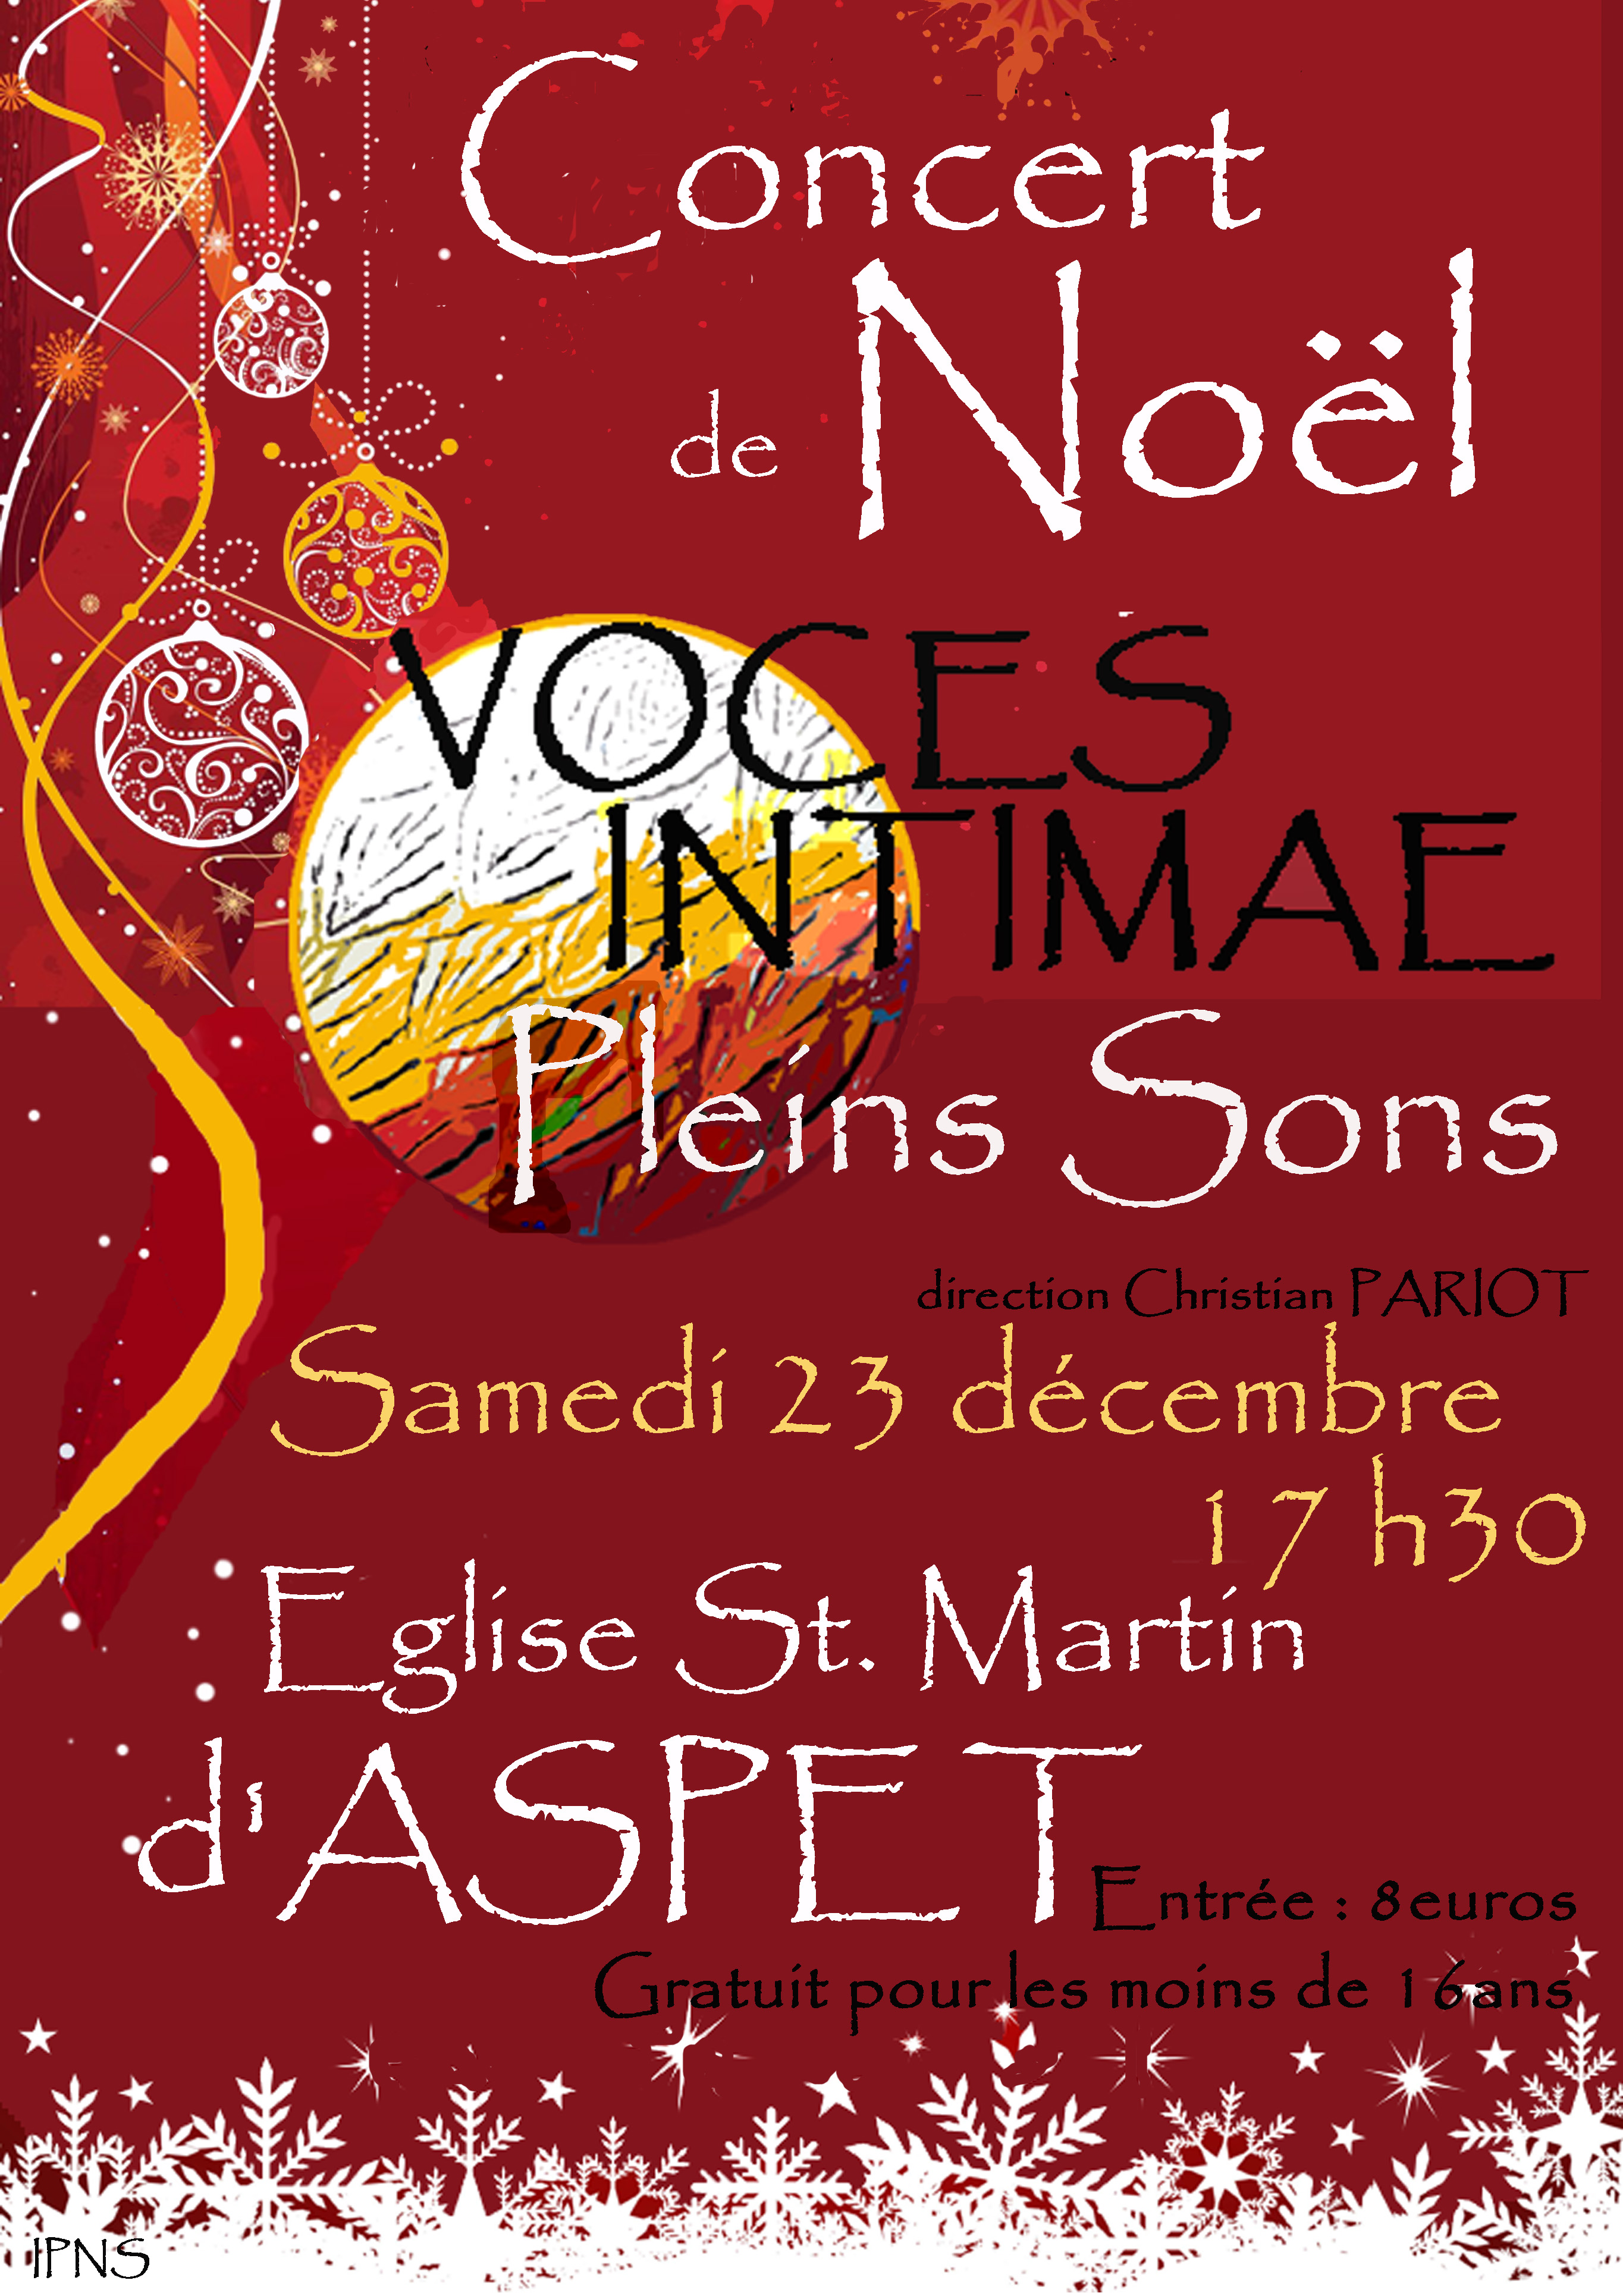 Concert de Noël avec Pleins Sons à Aspet le 23 décembre 2017 à 17h30